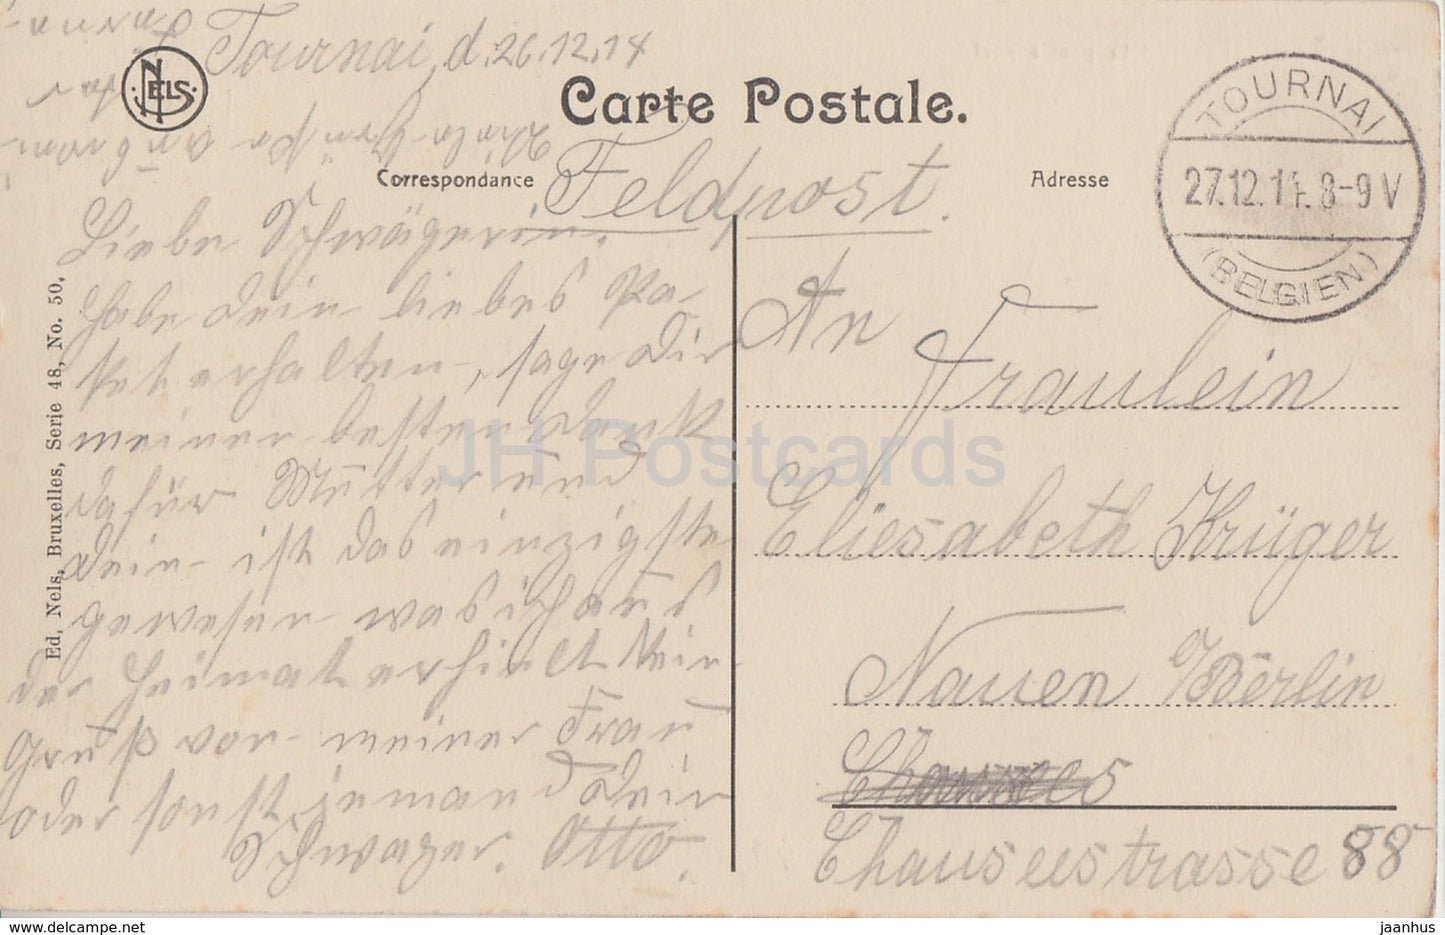 Tournai - Le Pont à Pont - pont - Feldpost - carte postale ancienne - 1914 - Belgique - utilisé